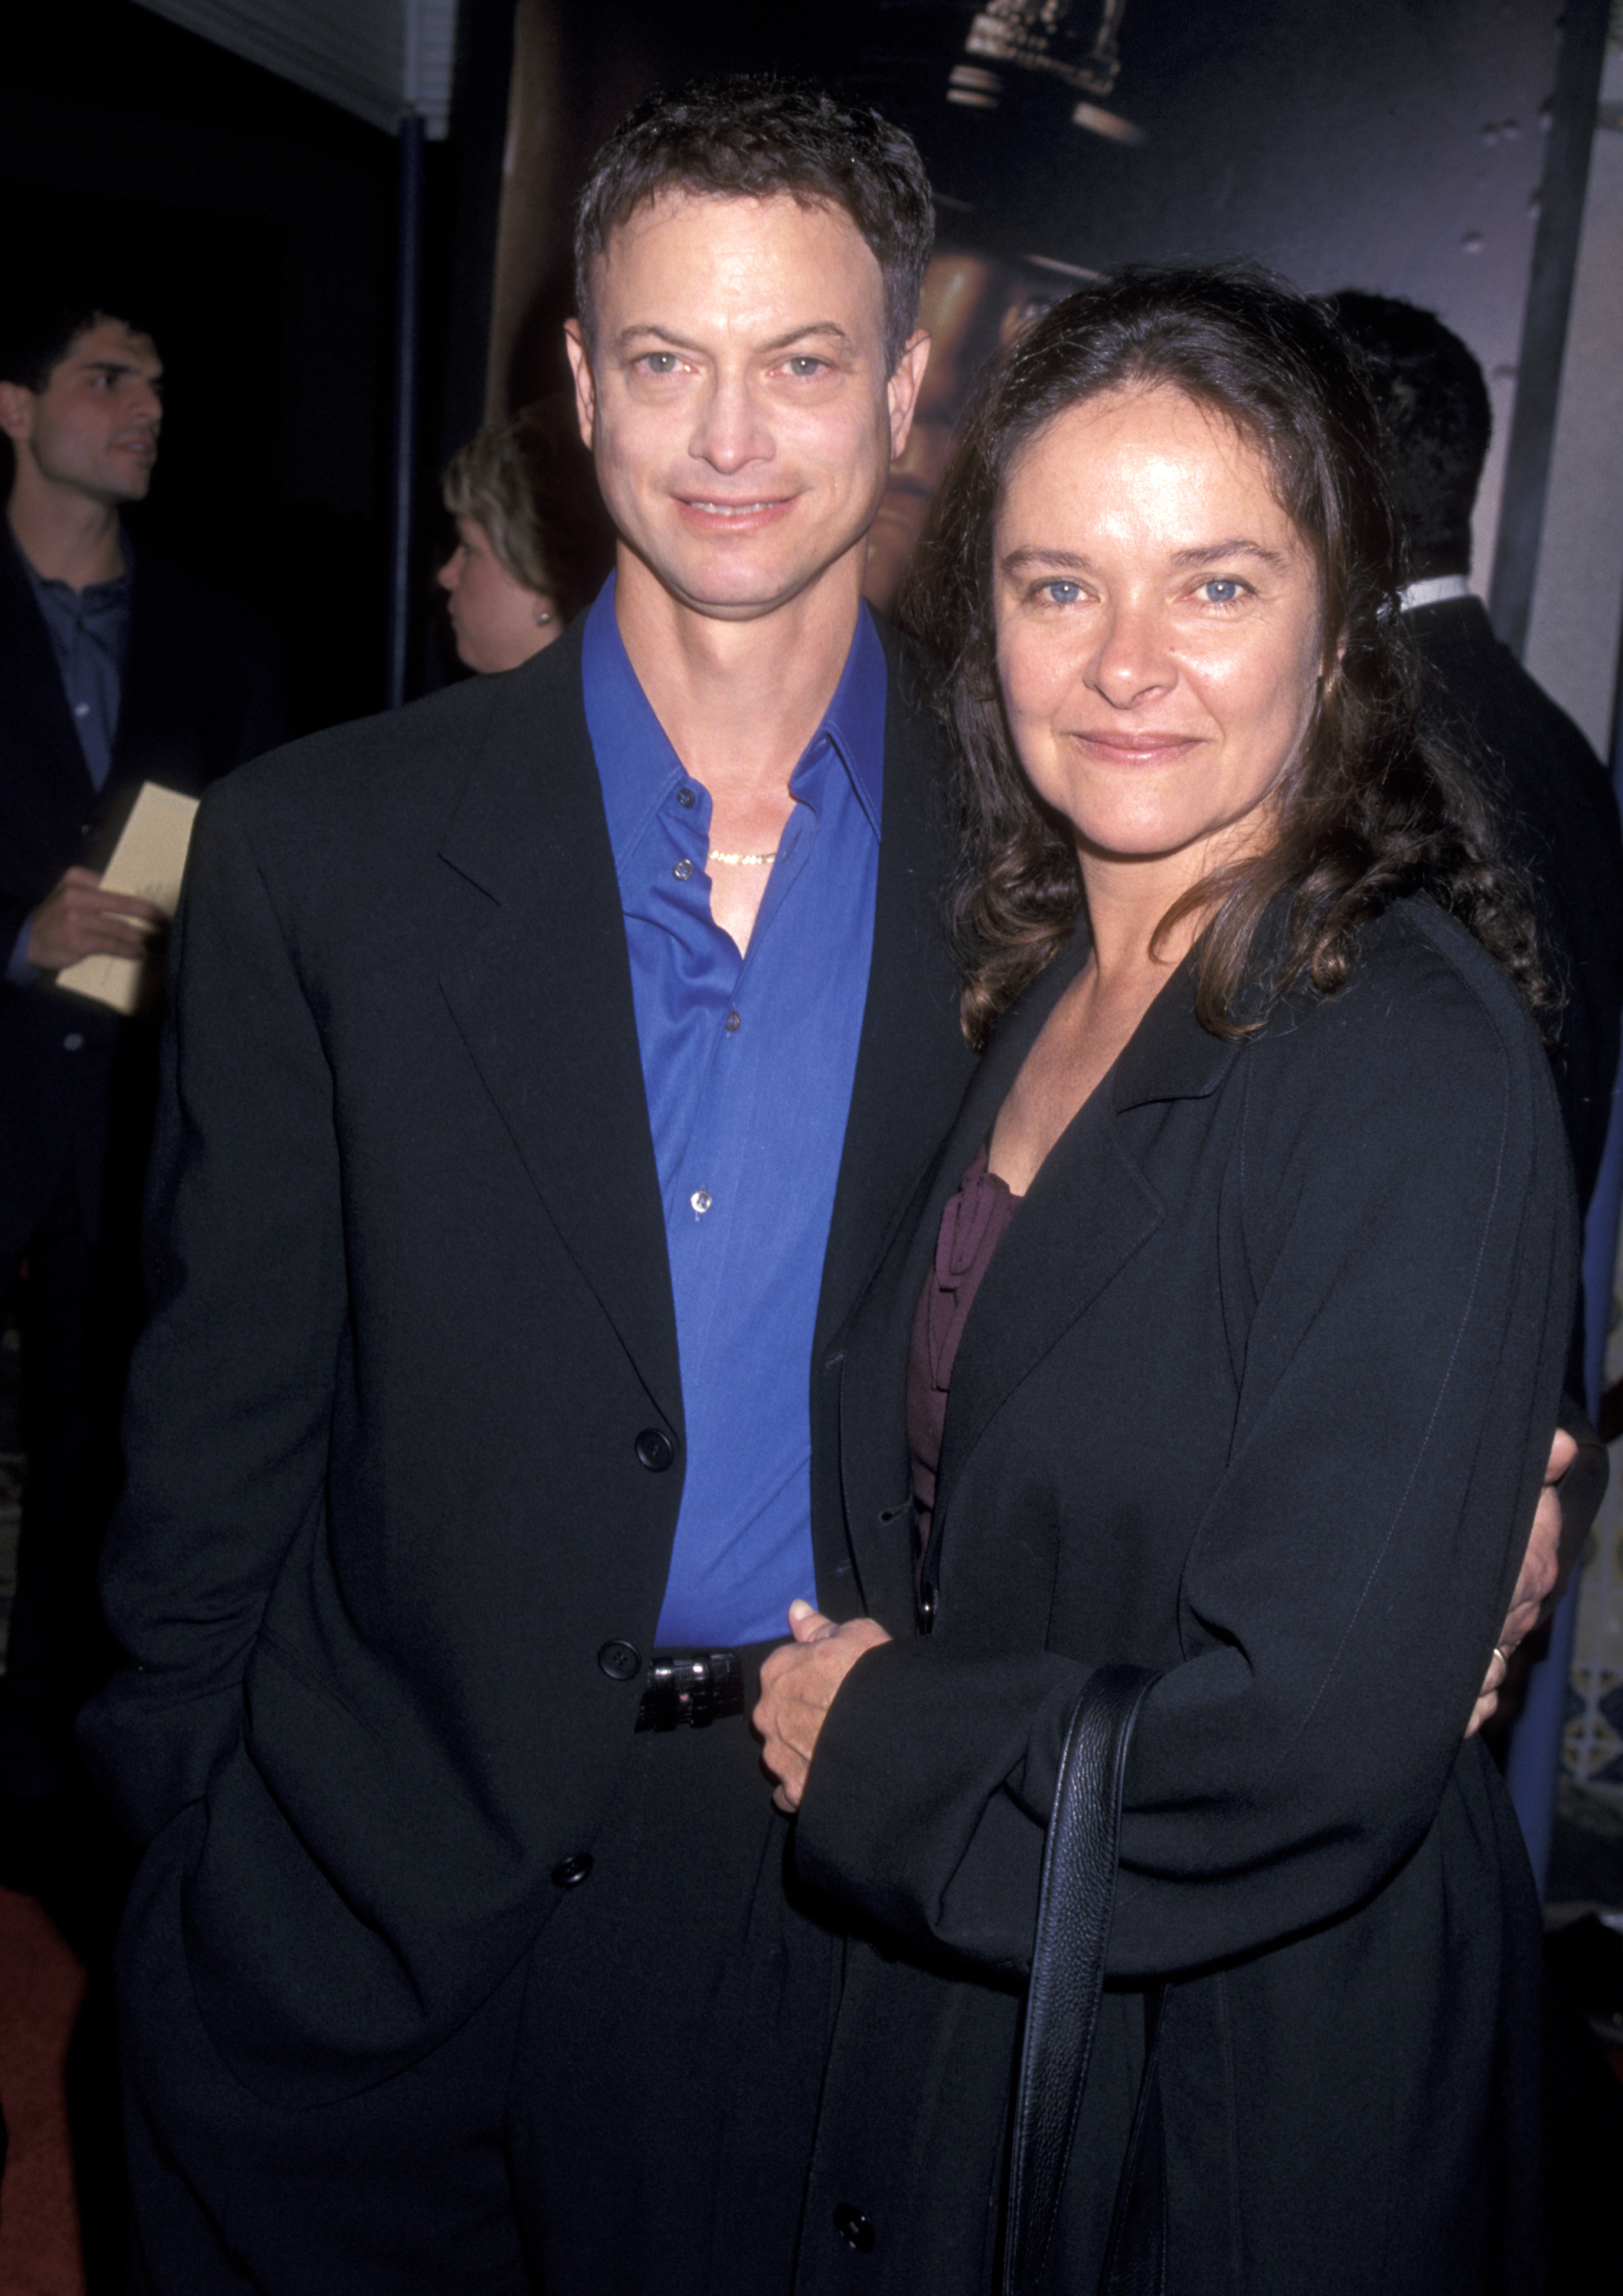 Gary Sinise et sa femme Moira Harris lors de la première du film "The Green Mile" au Mann Village Theatre à Westwood, Californie | Source : Getty Images